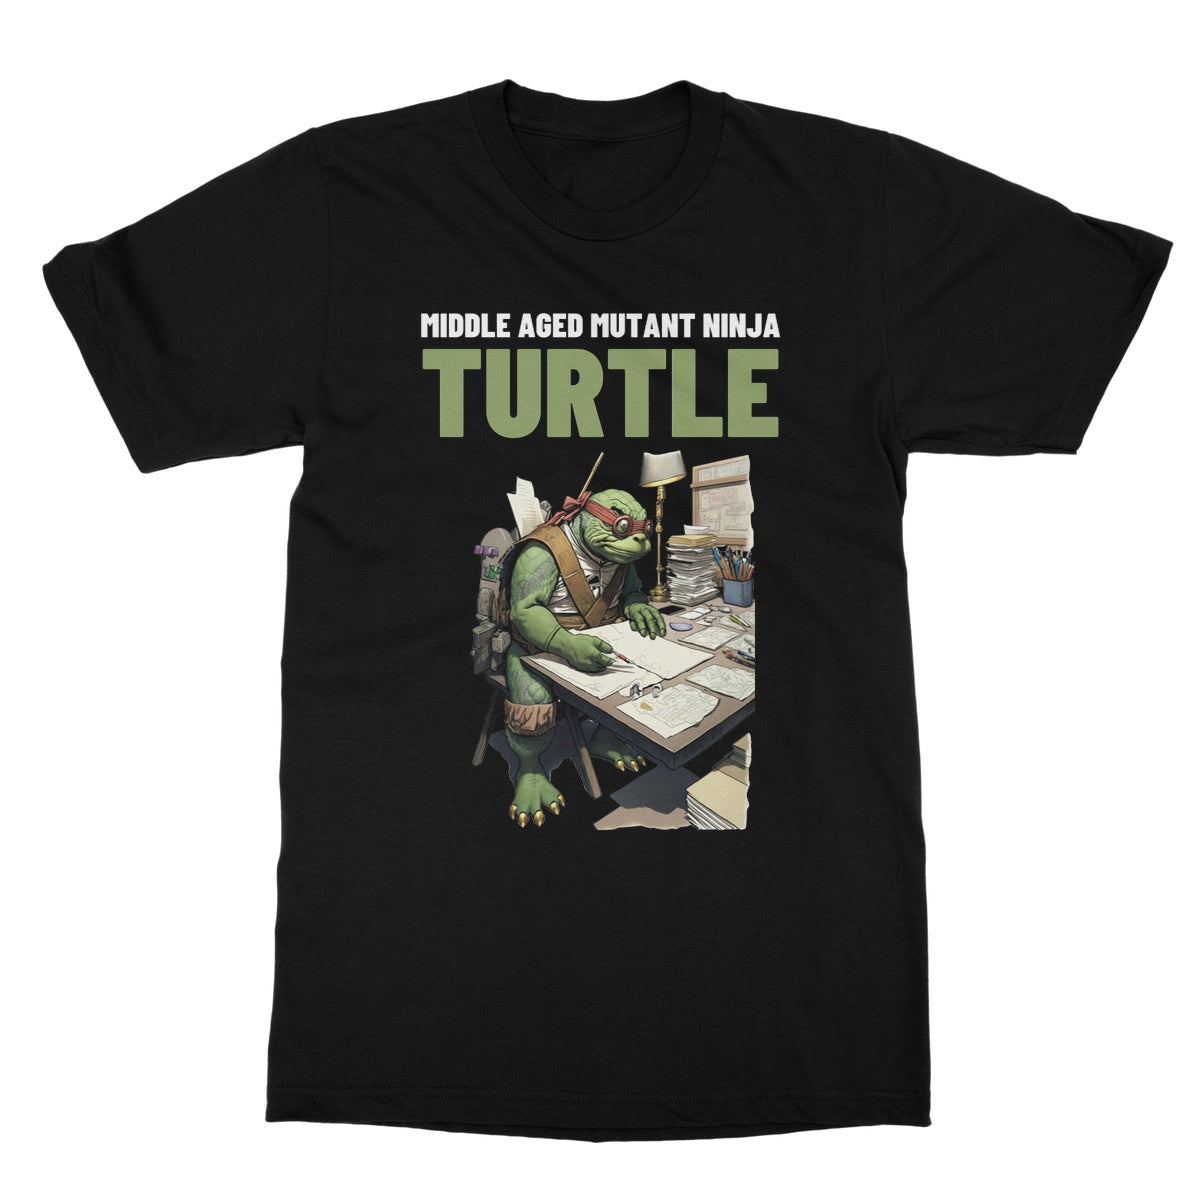 middle aged mutant ninja turtle t shirt black